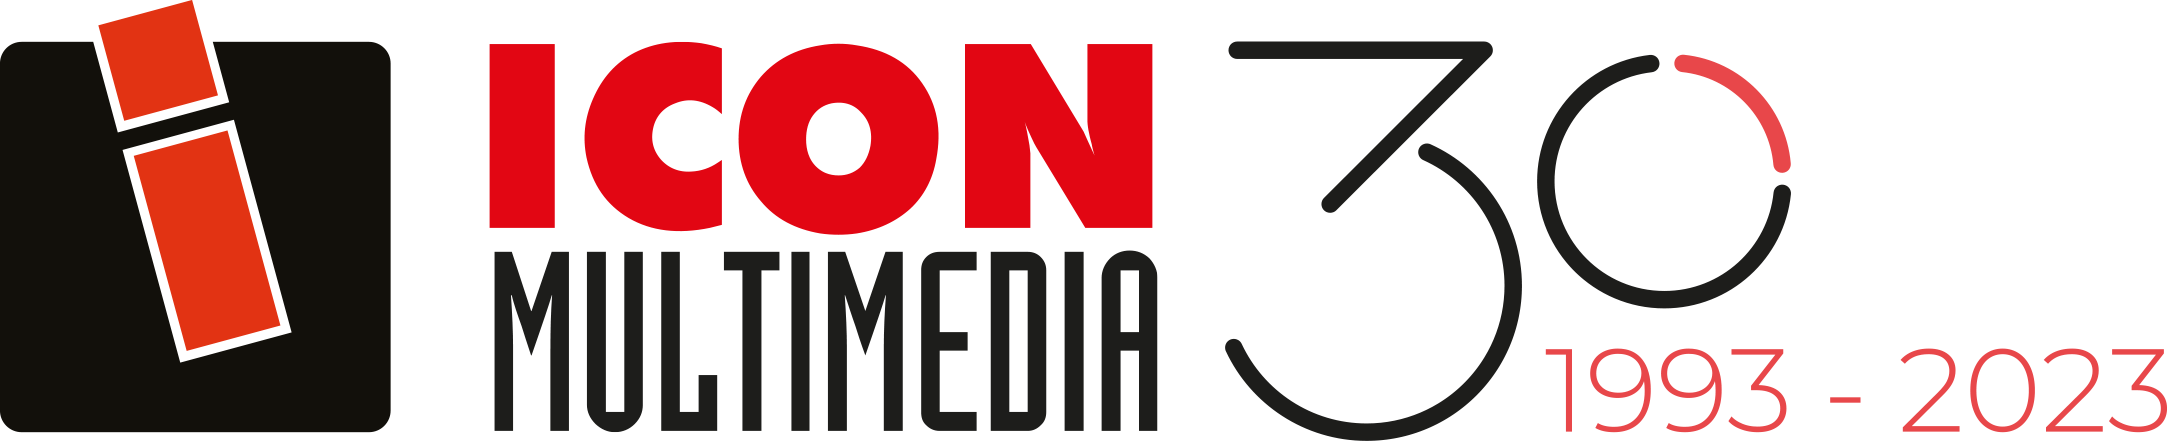 Logotipo-ICON-8